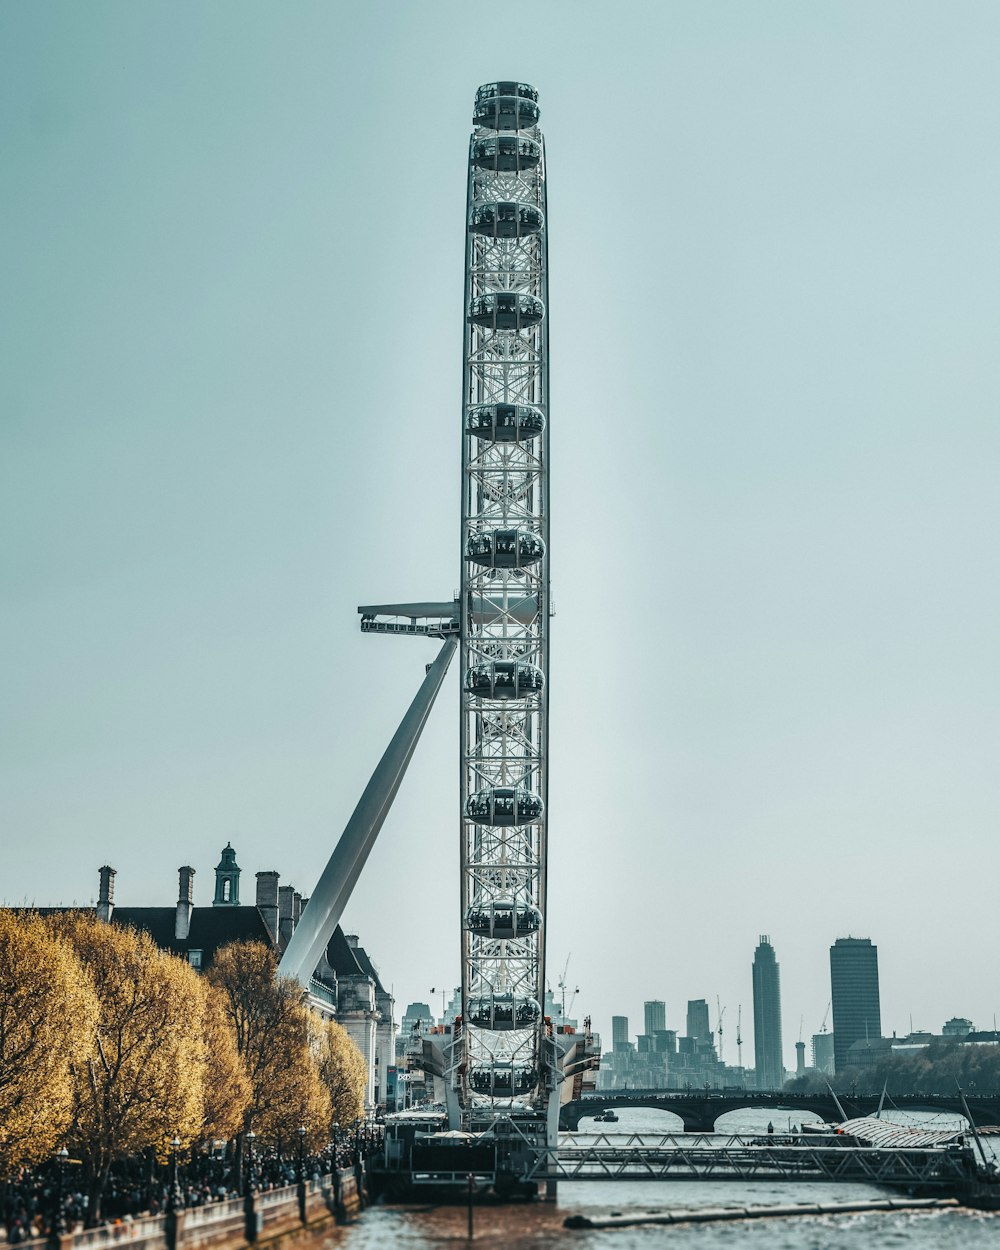 London Eye in London during daytime